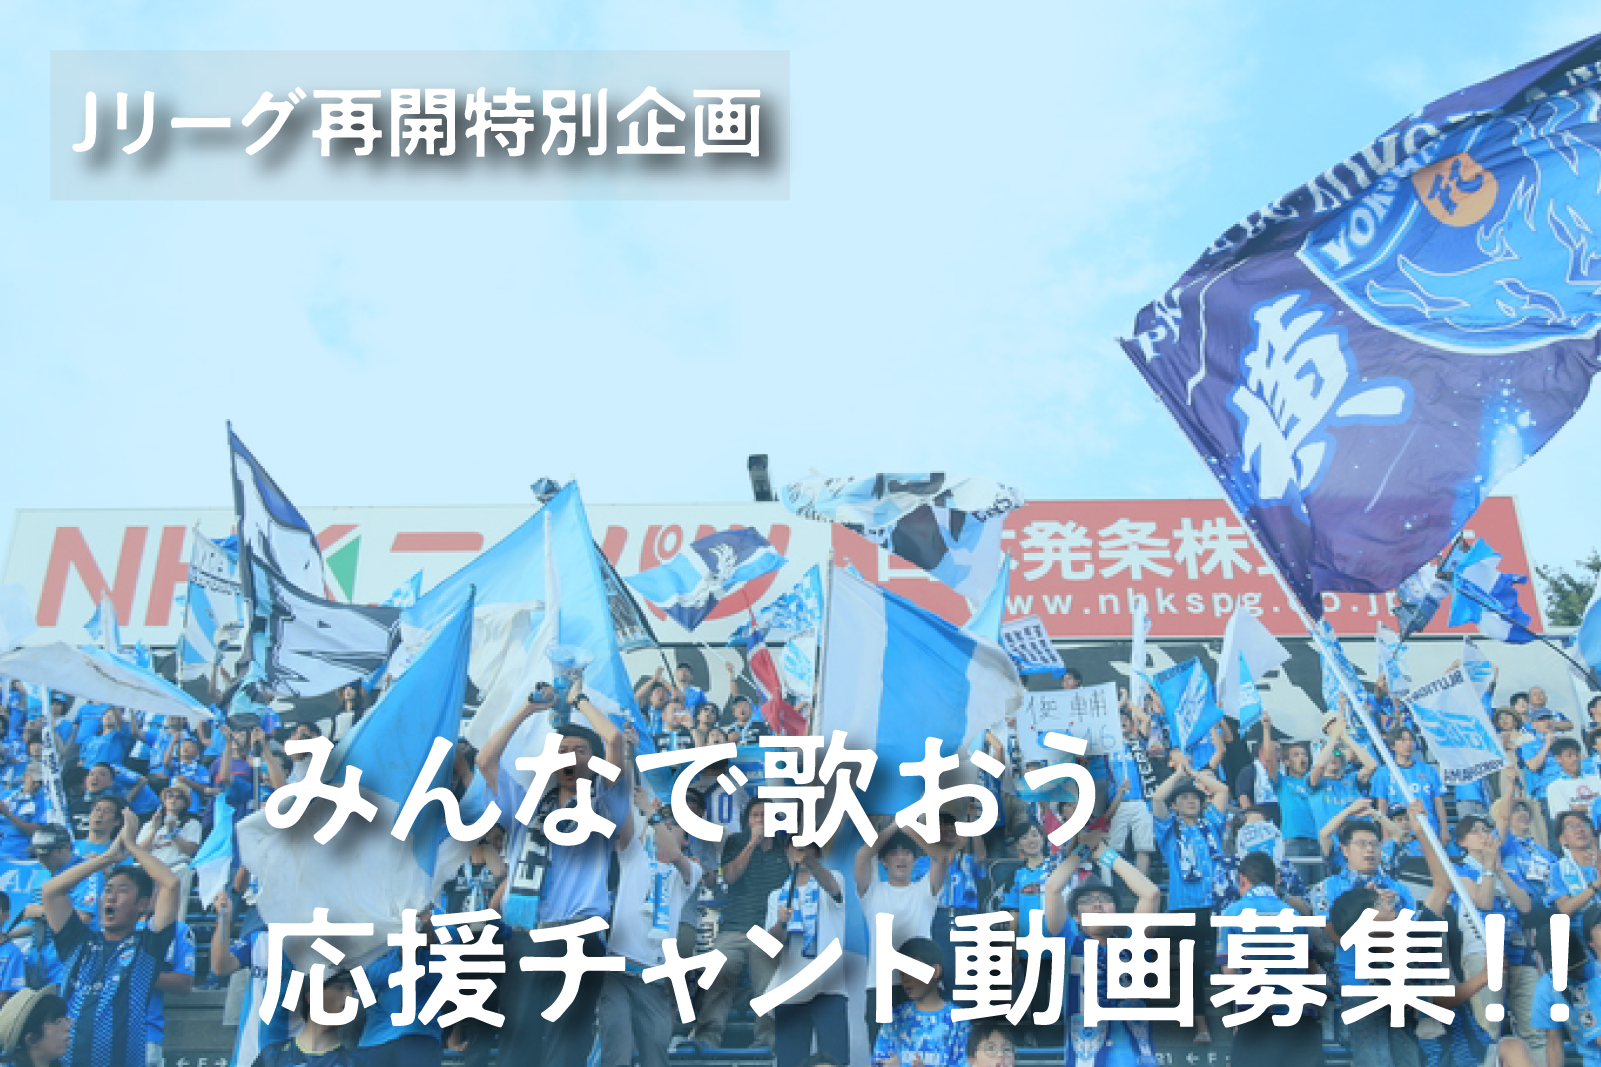 ｊリーグ再開特別企画 みんなで歌ってスタジアムに声援を届けよう 横浜fcオフィシャルウェブサイト